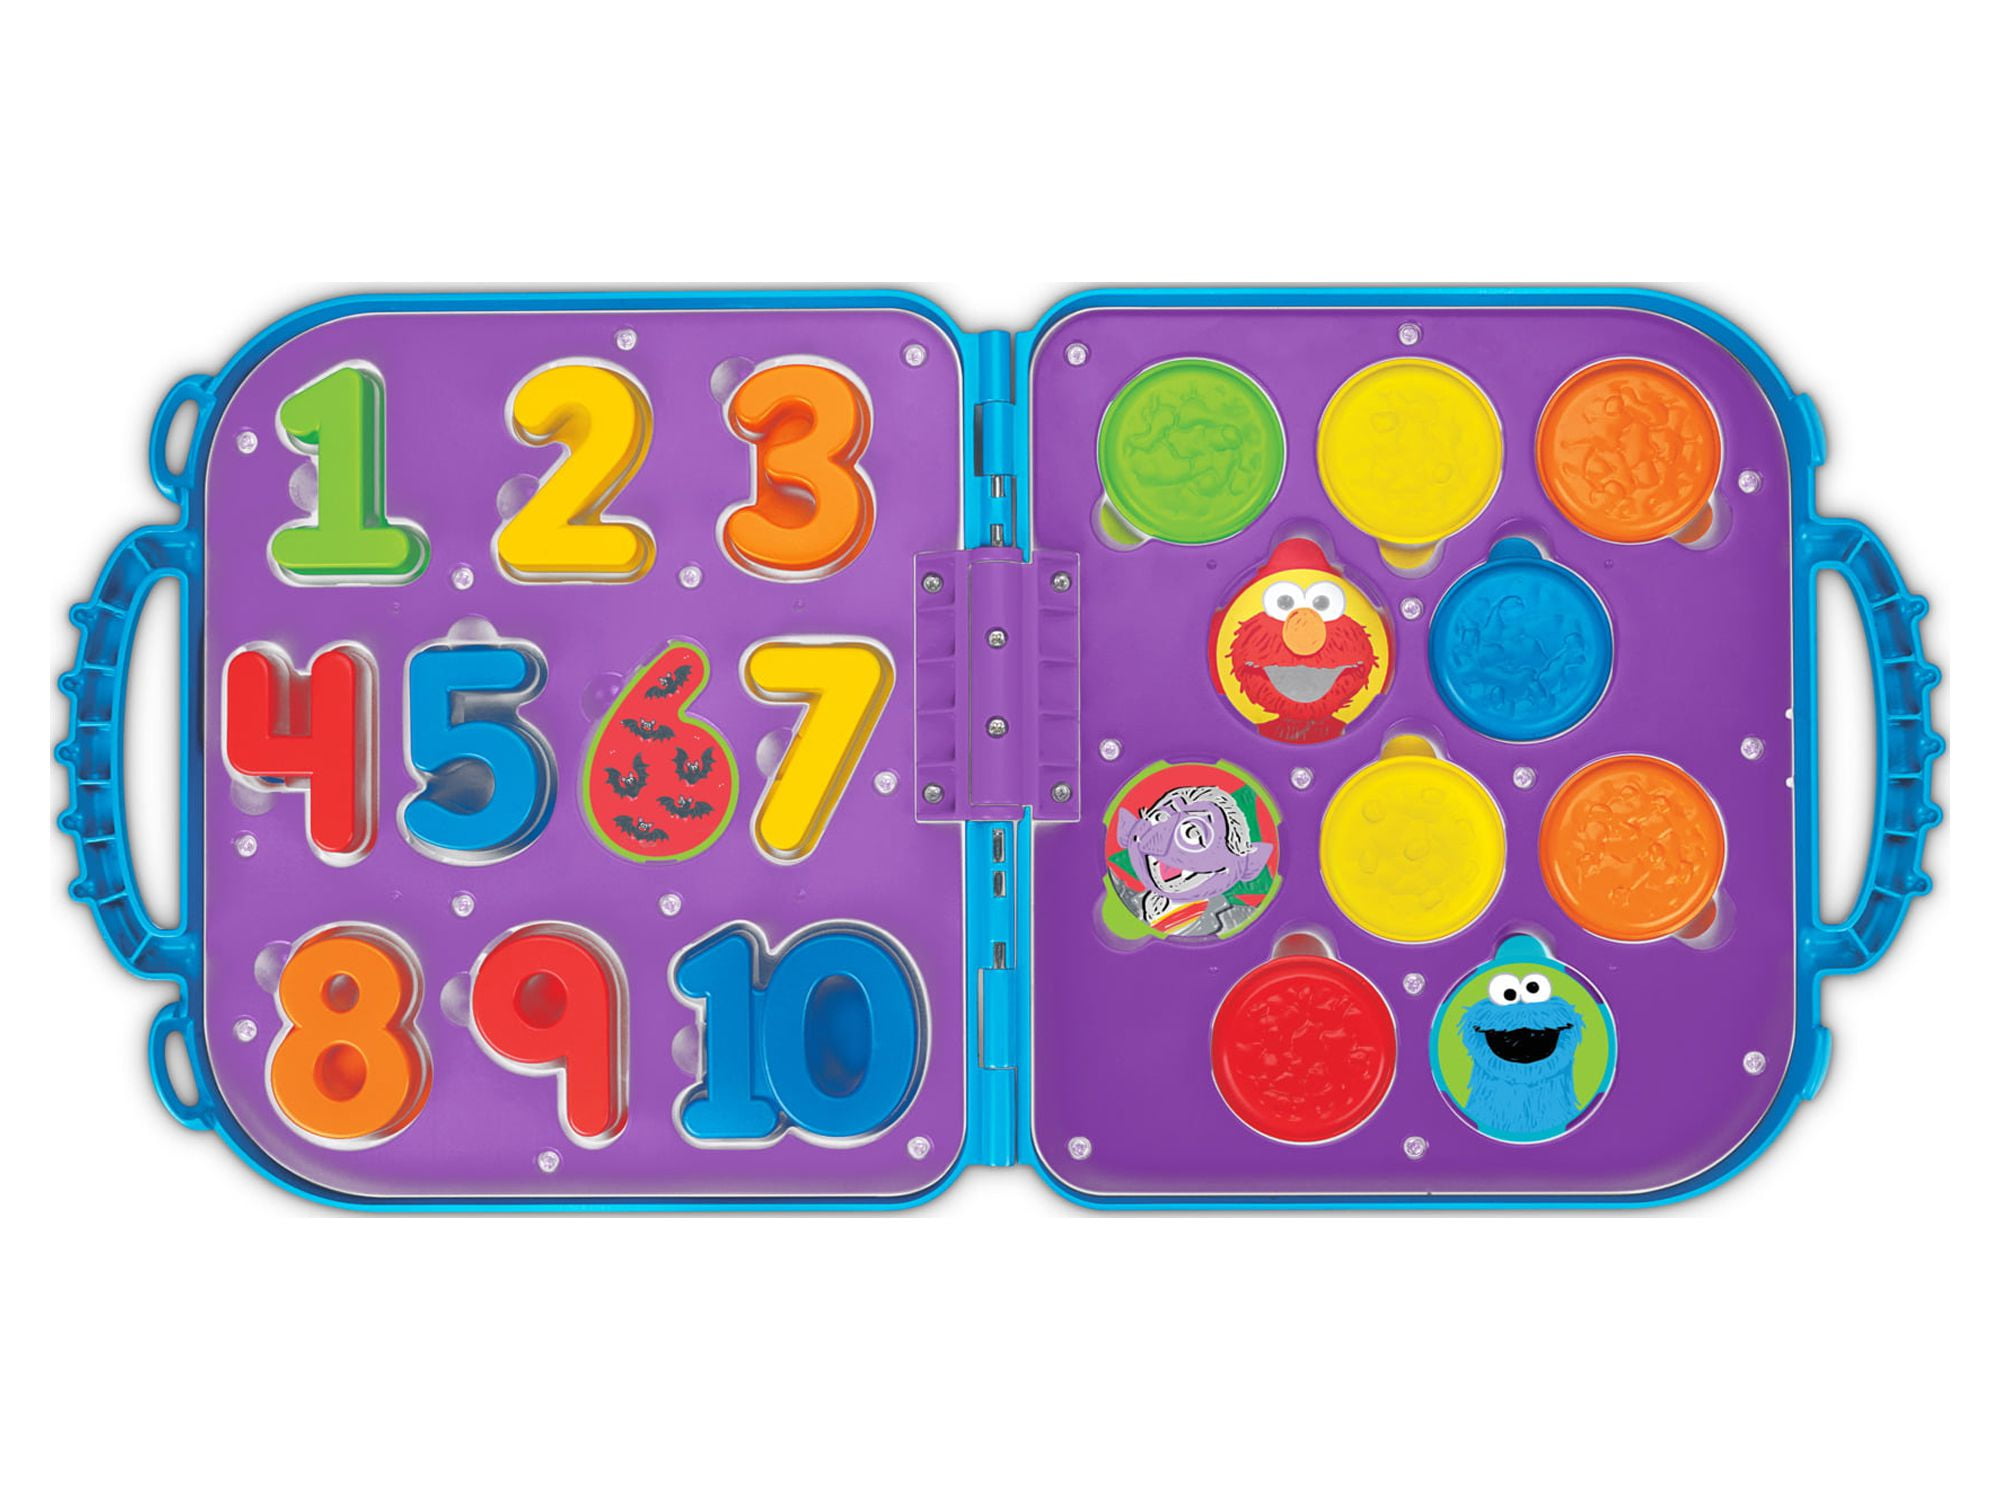 Playskool, Toys, Playskool Sesame Street Cookie Monster On The Go Case  Numbers Cookies